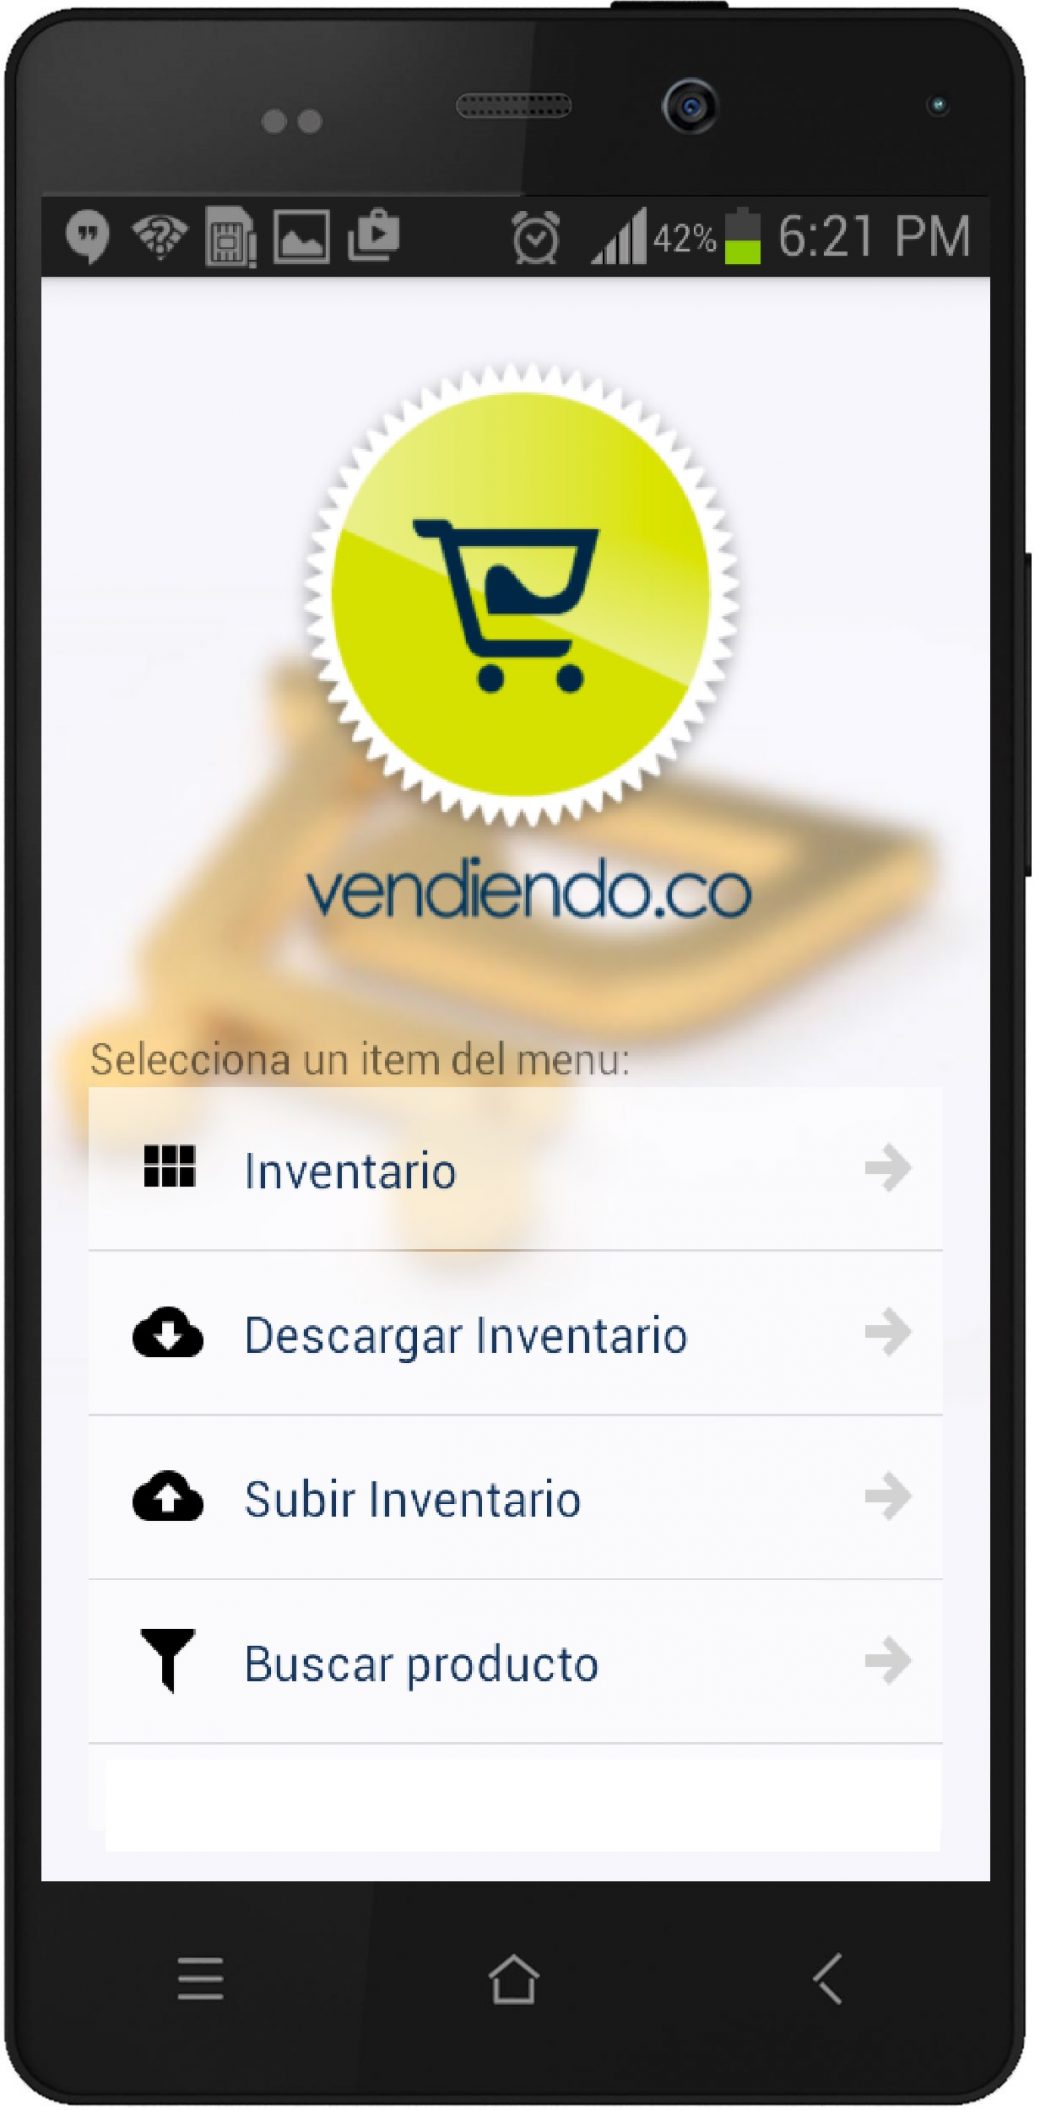 Actualiza Tus Existencias Con La App Movil De Inventarios De Vendiendo 7808